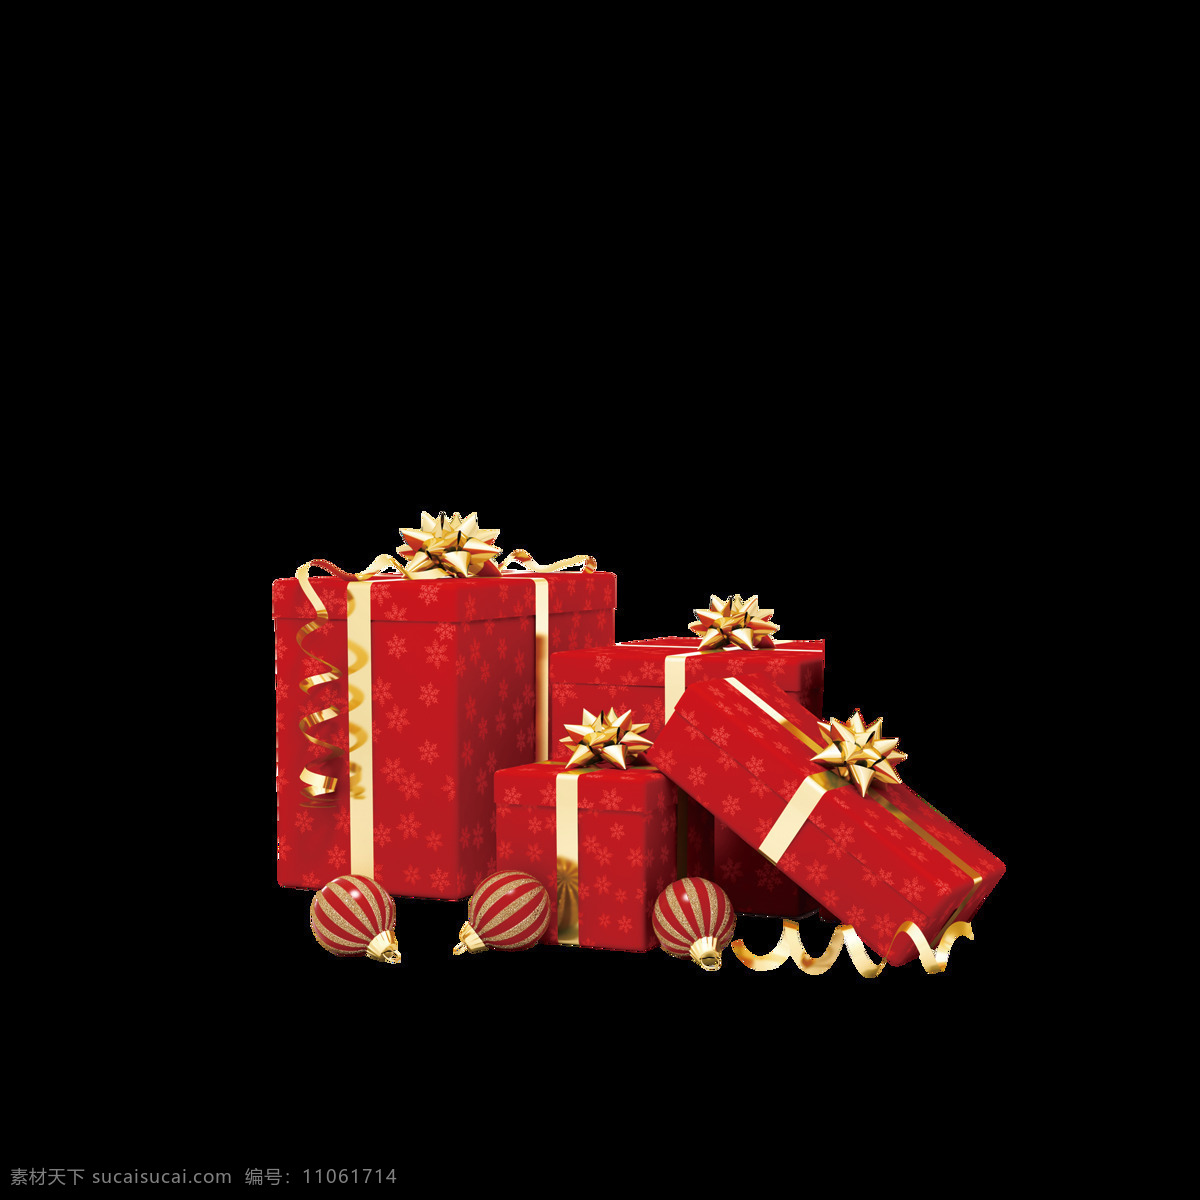 红色 圣诞 节日 礼物 元素 抽象素材 抽象元素 红色礼盒 红色礼物 卡通圣诞元素 卡通元素 圣诞节 圣诞礼物 圣诞免抠元素 圣诞庆典 圣诞素 圣诞主题